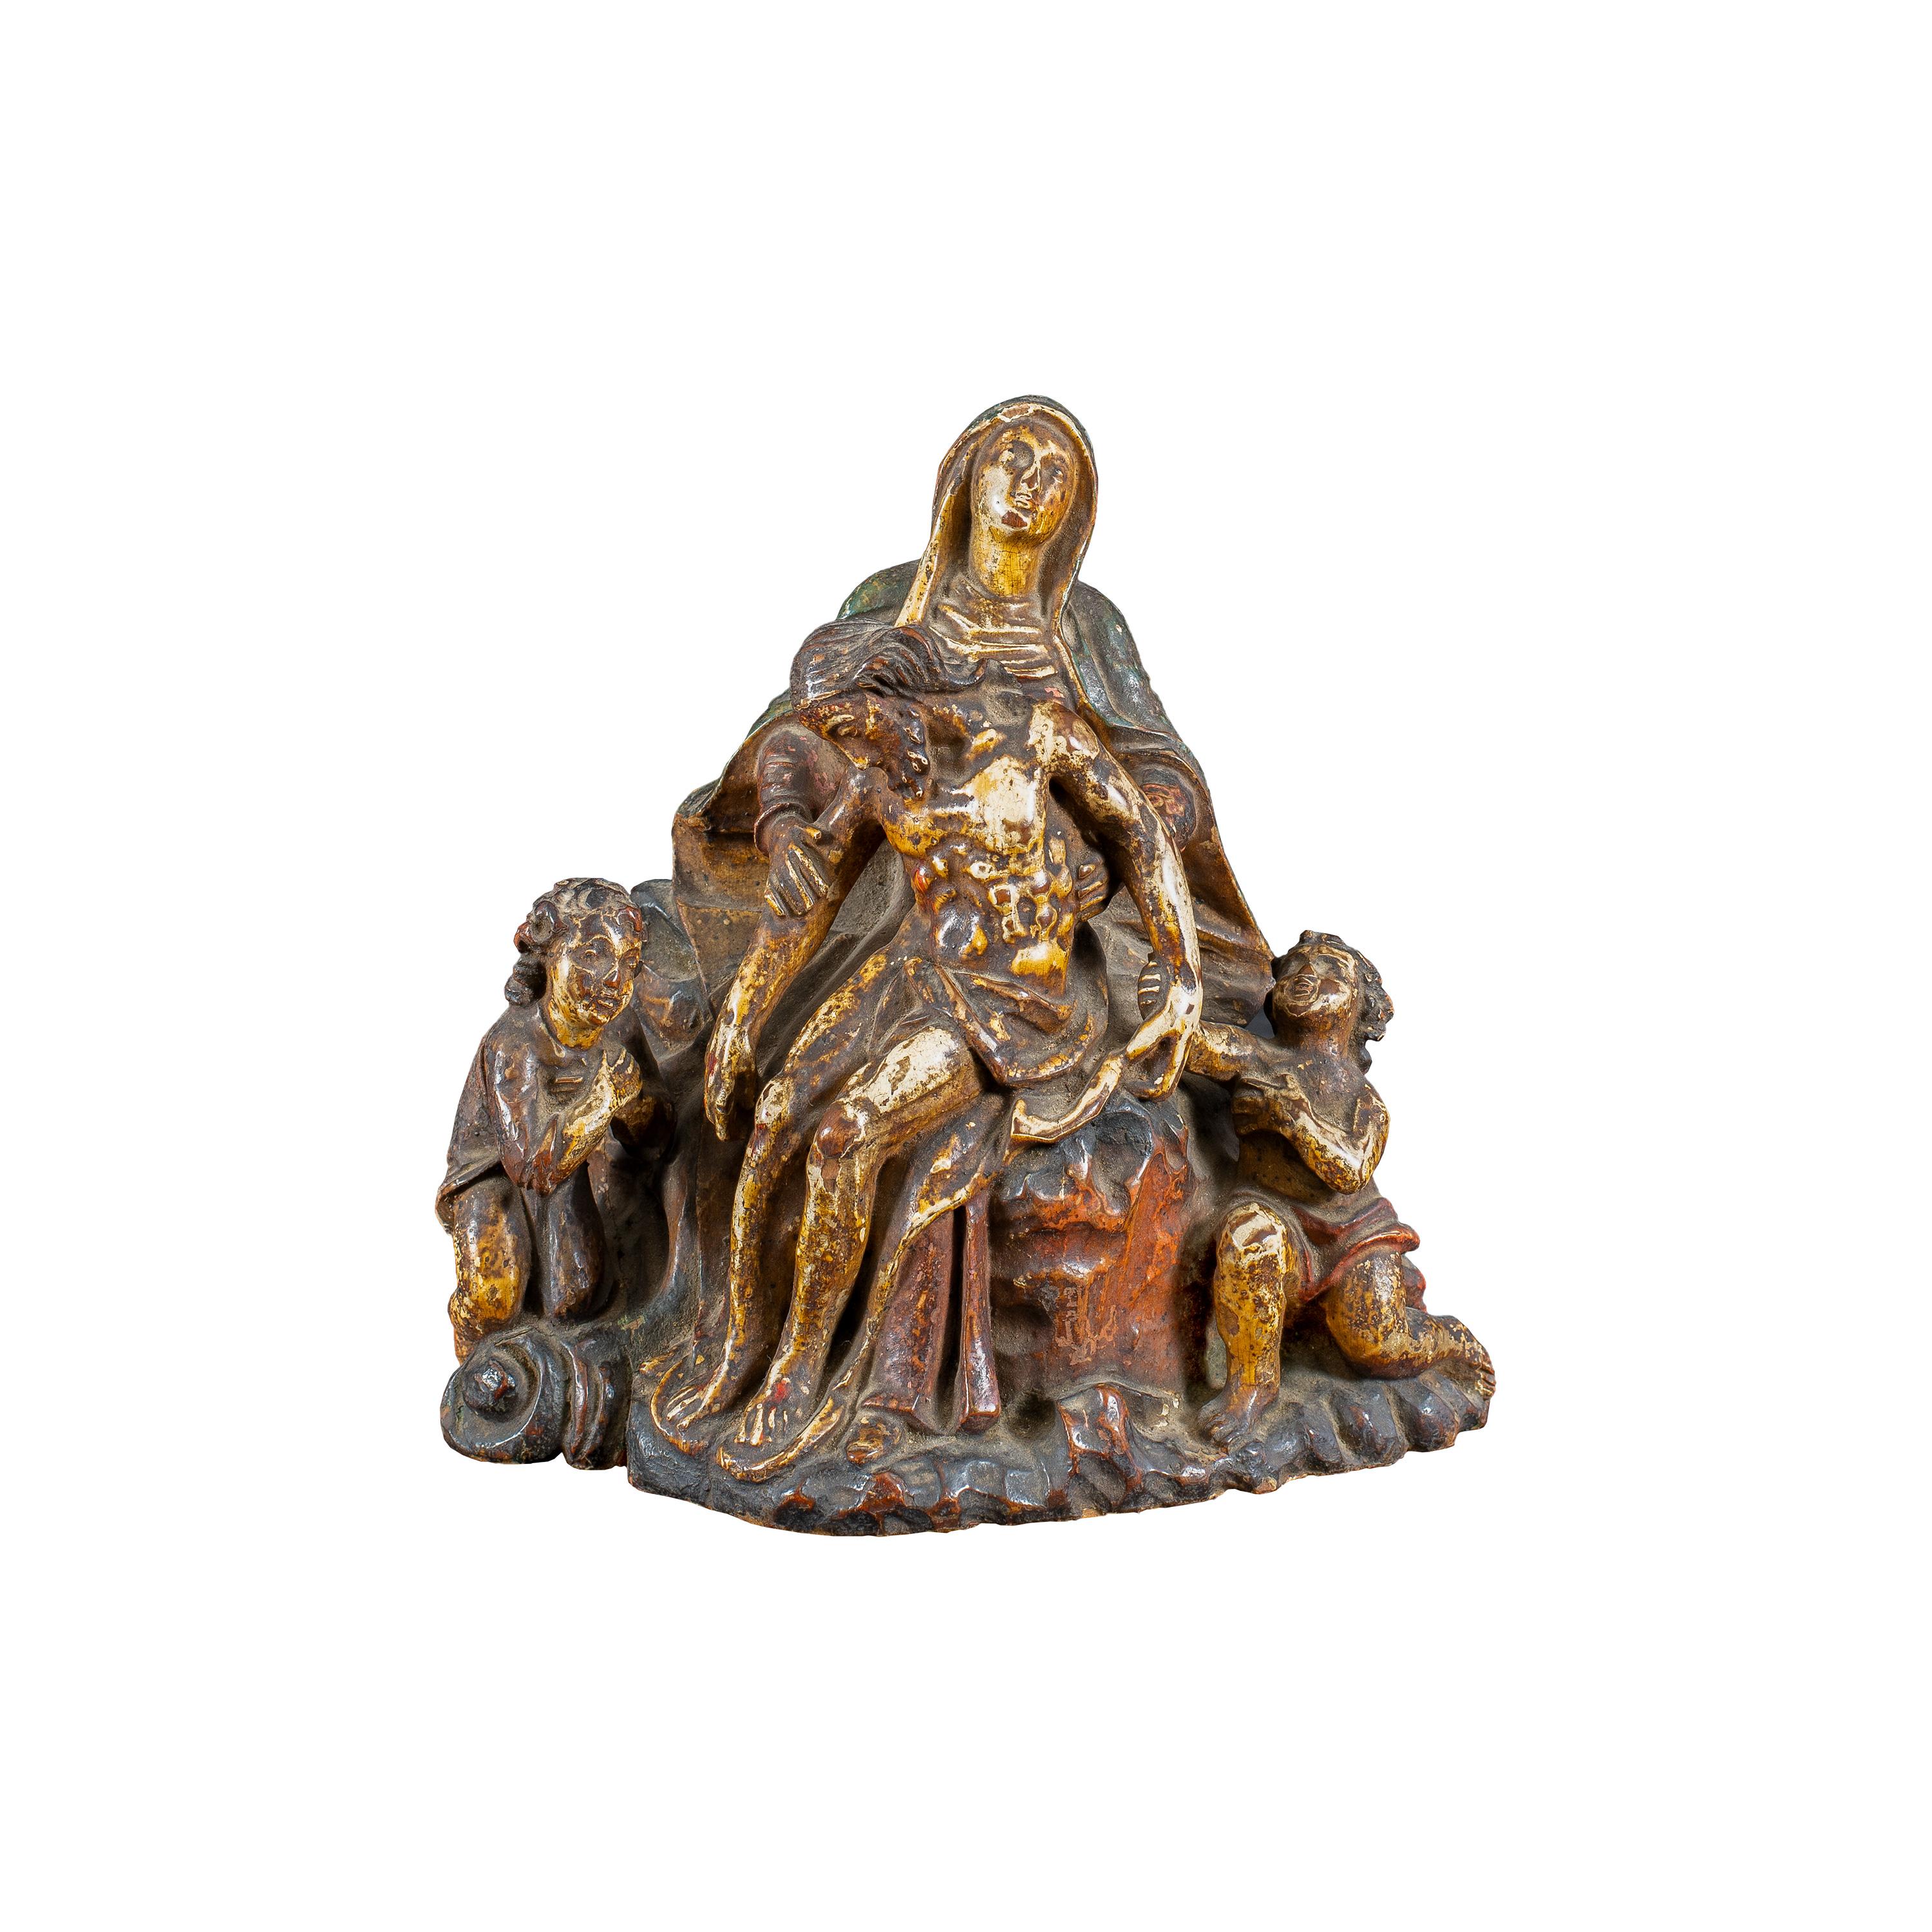 Figurative Sculpture Unknown - Master italien - Sculpture de figures du XVIIIe siècle - Trinité vierge - Peinture en bois sculpté